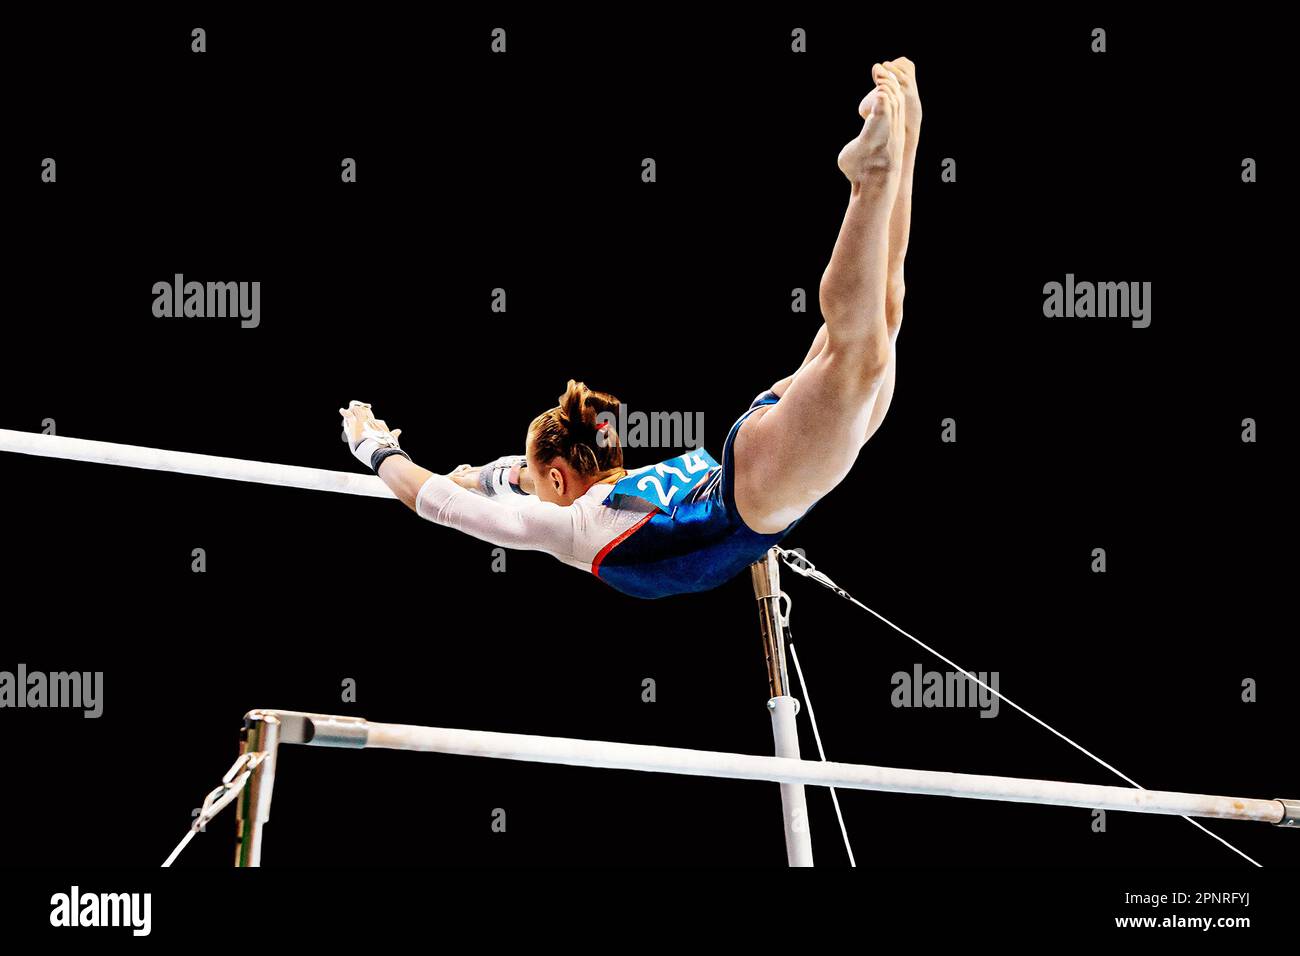 exercice de gymnaste féminin sur des barres inégales en gymnastique artistique, élément de vol de la barre basse à la barre haute, fond noir Banque D'Images